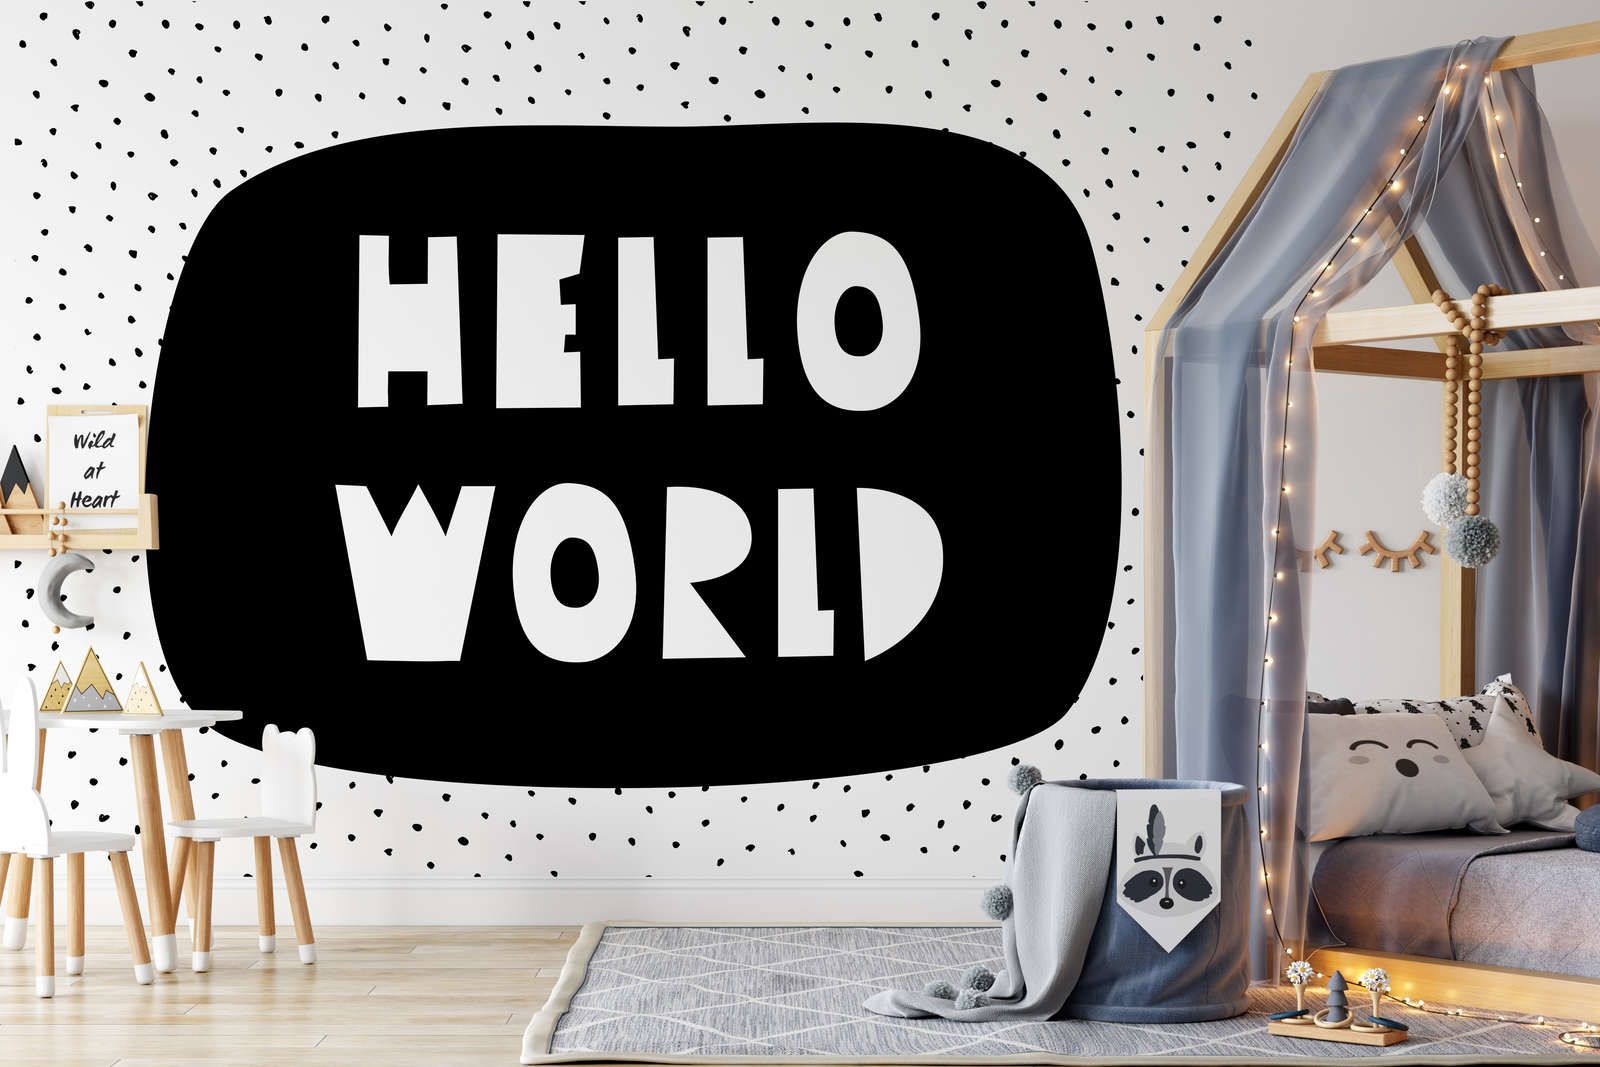             papiers peints à impression numérique pour chambre d'enfant avec inscription "Hello World" - intissé structuré
        